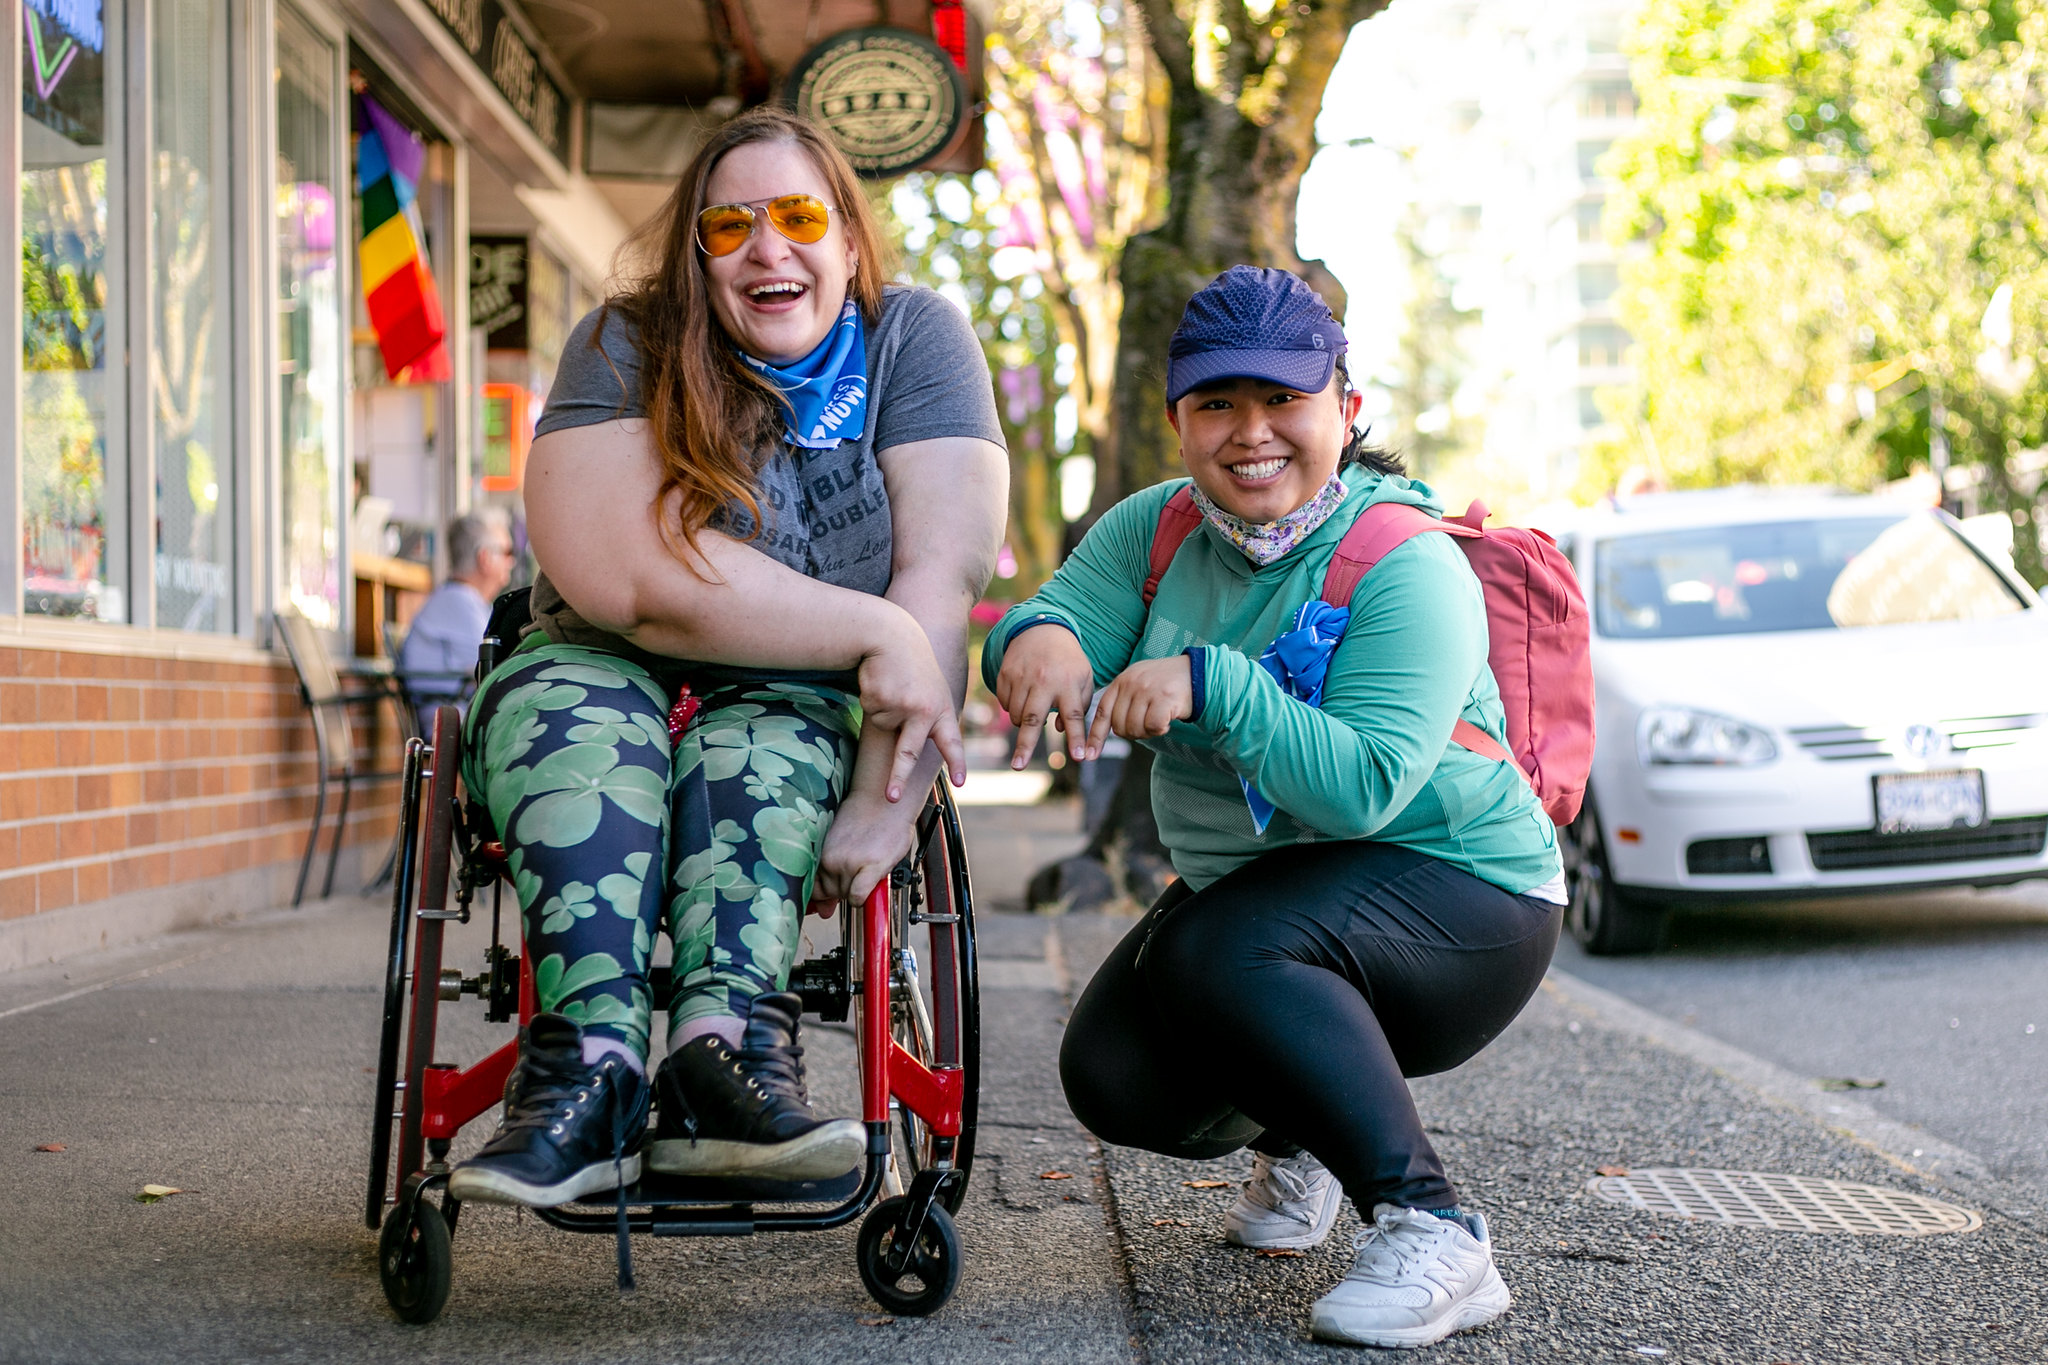 deux femmes, dont l'une est assise sur un fauteuil roulant, sourient en posant sur le trottoir pour l'appareil photo